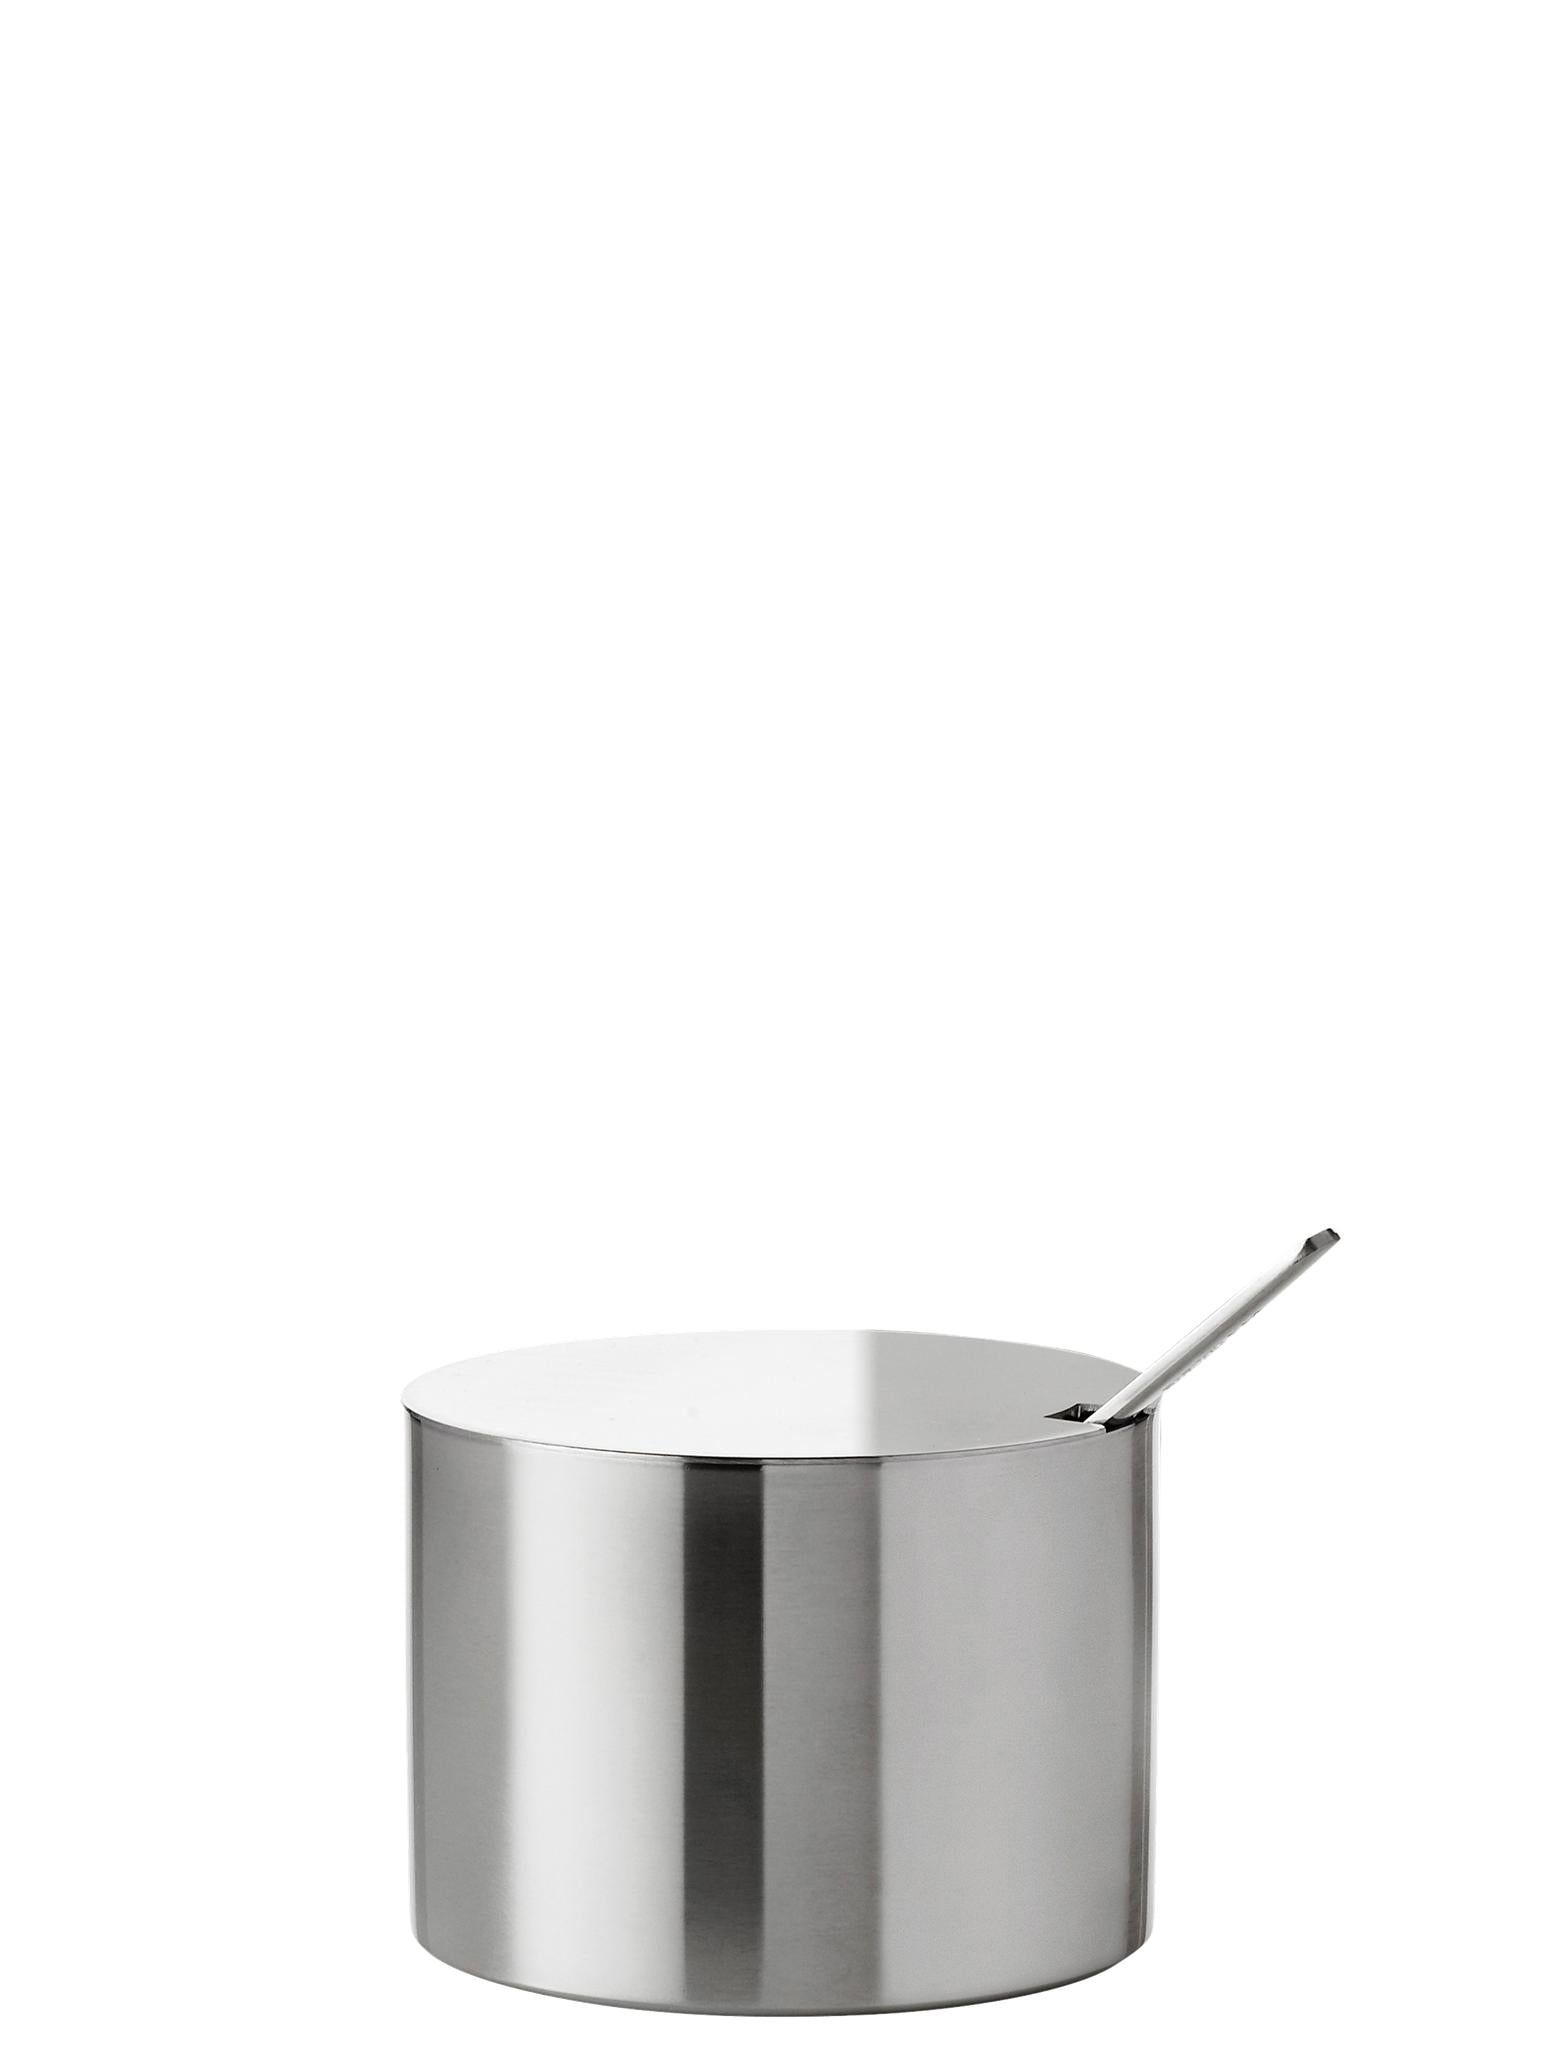 Stelton Arne Jacobsen Sugar Bowl 0,2 L.